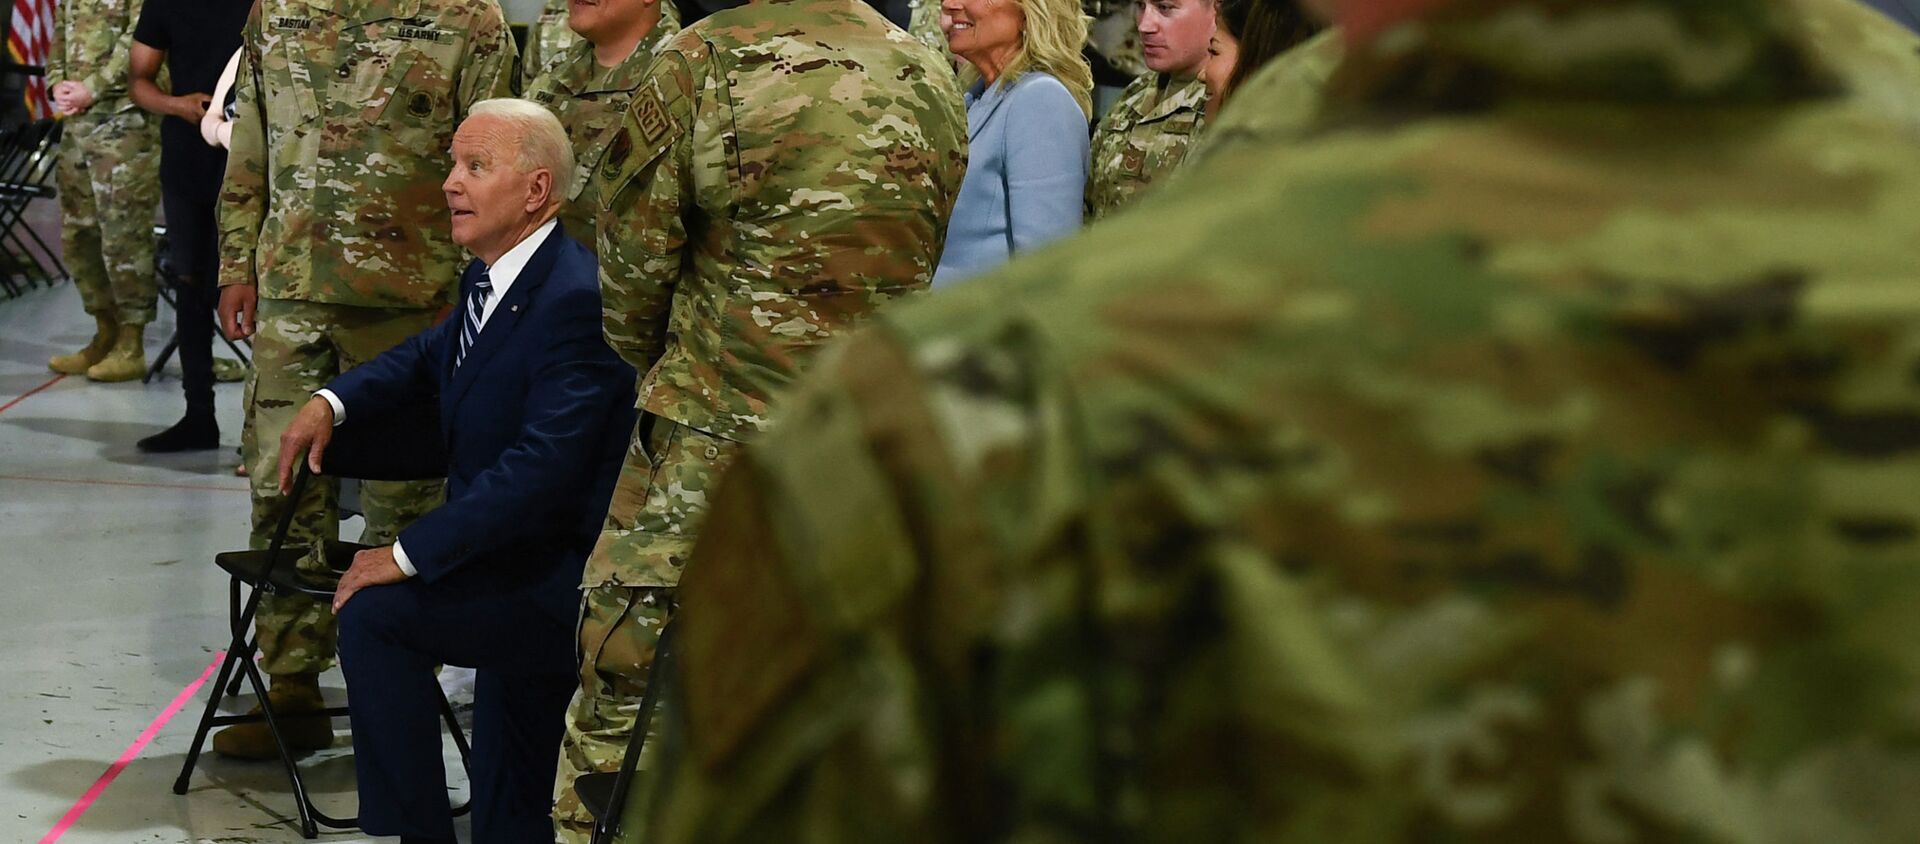 Президент США Джо Байден позирует с военнослужащими на базе Лэнгли-Юстис в Хэмптоне, штат Вирджиния. 28 мая 2021 года  - Sputnik Кыргызстан, 1920, 30.05.2021